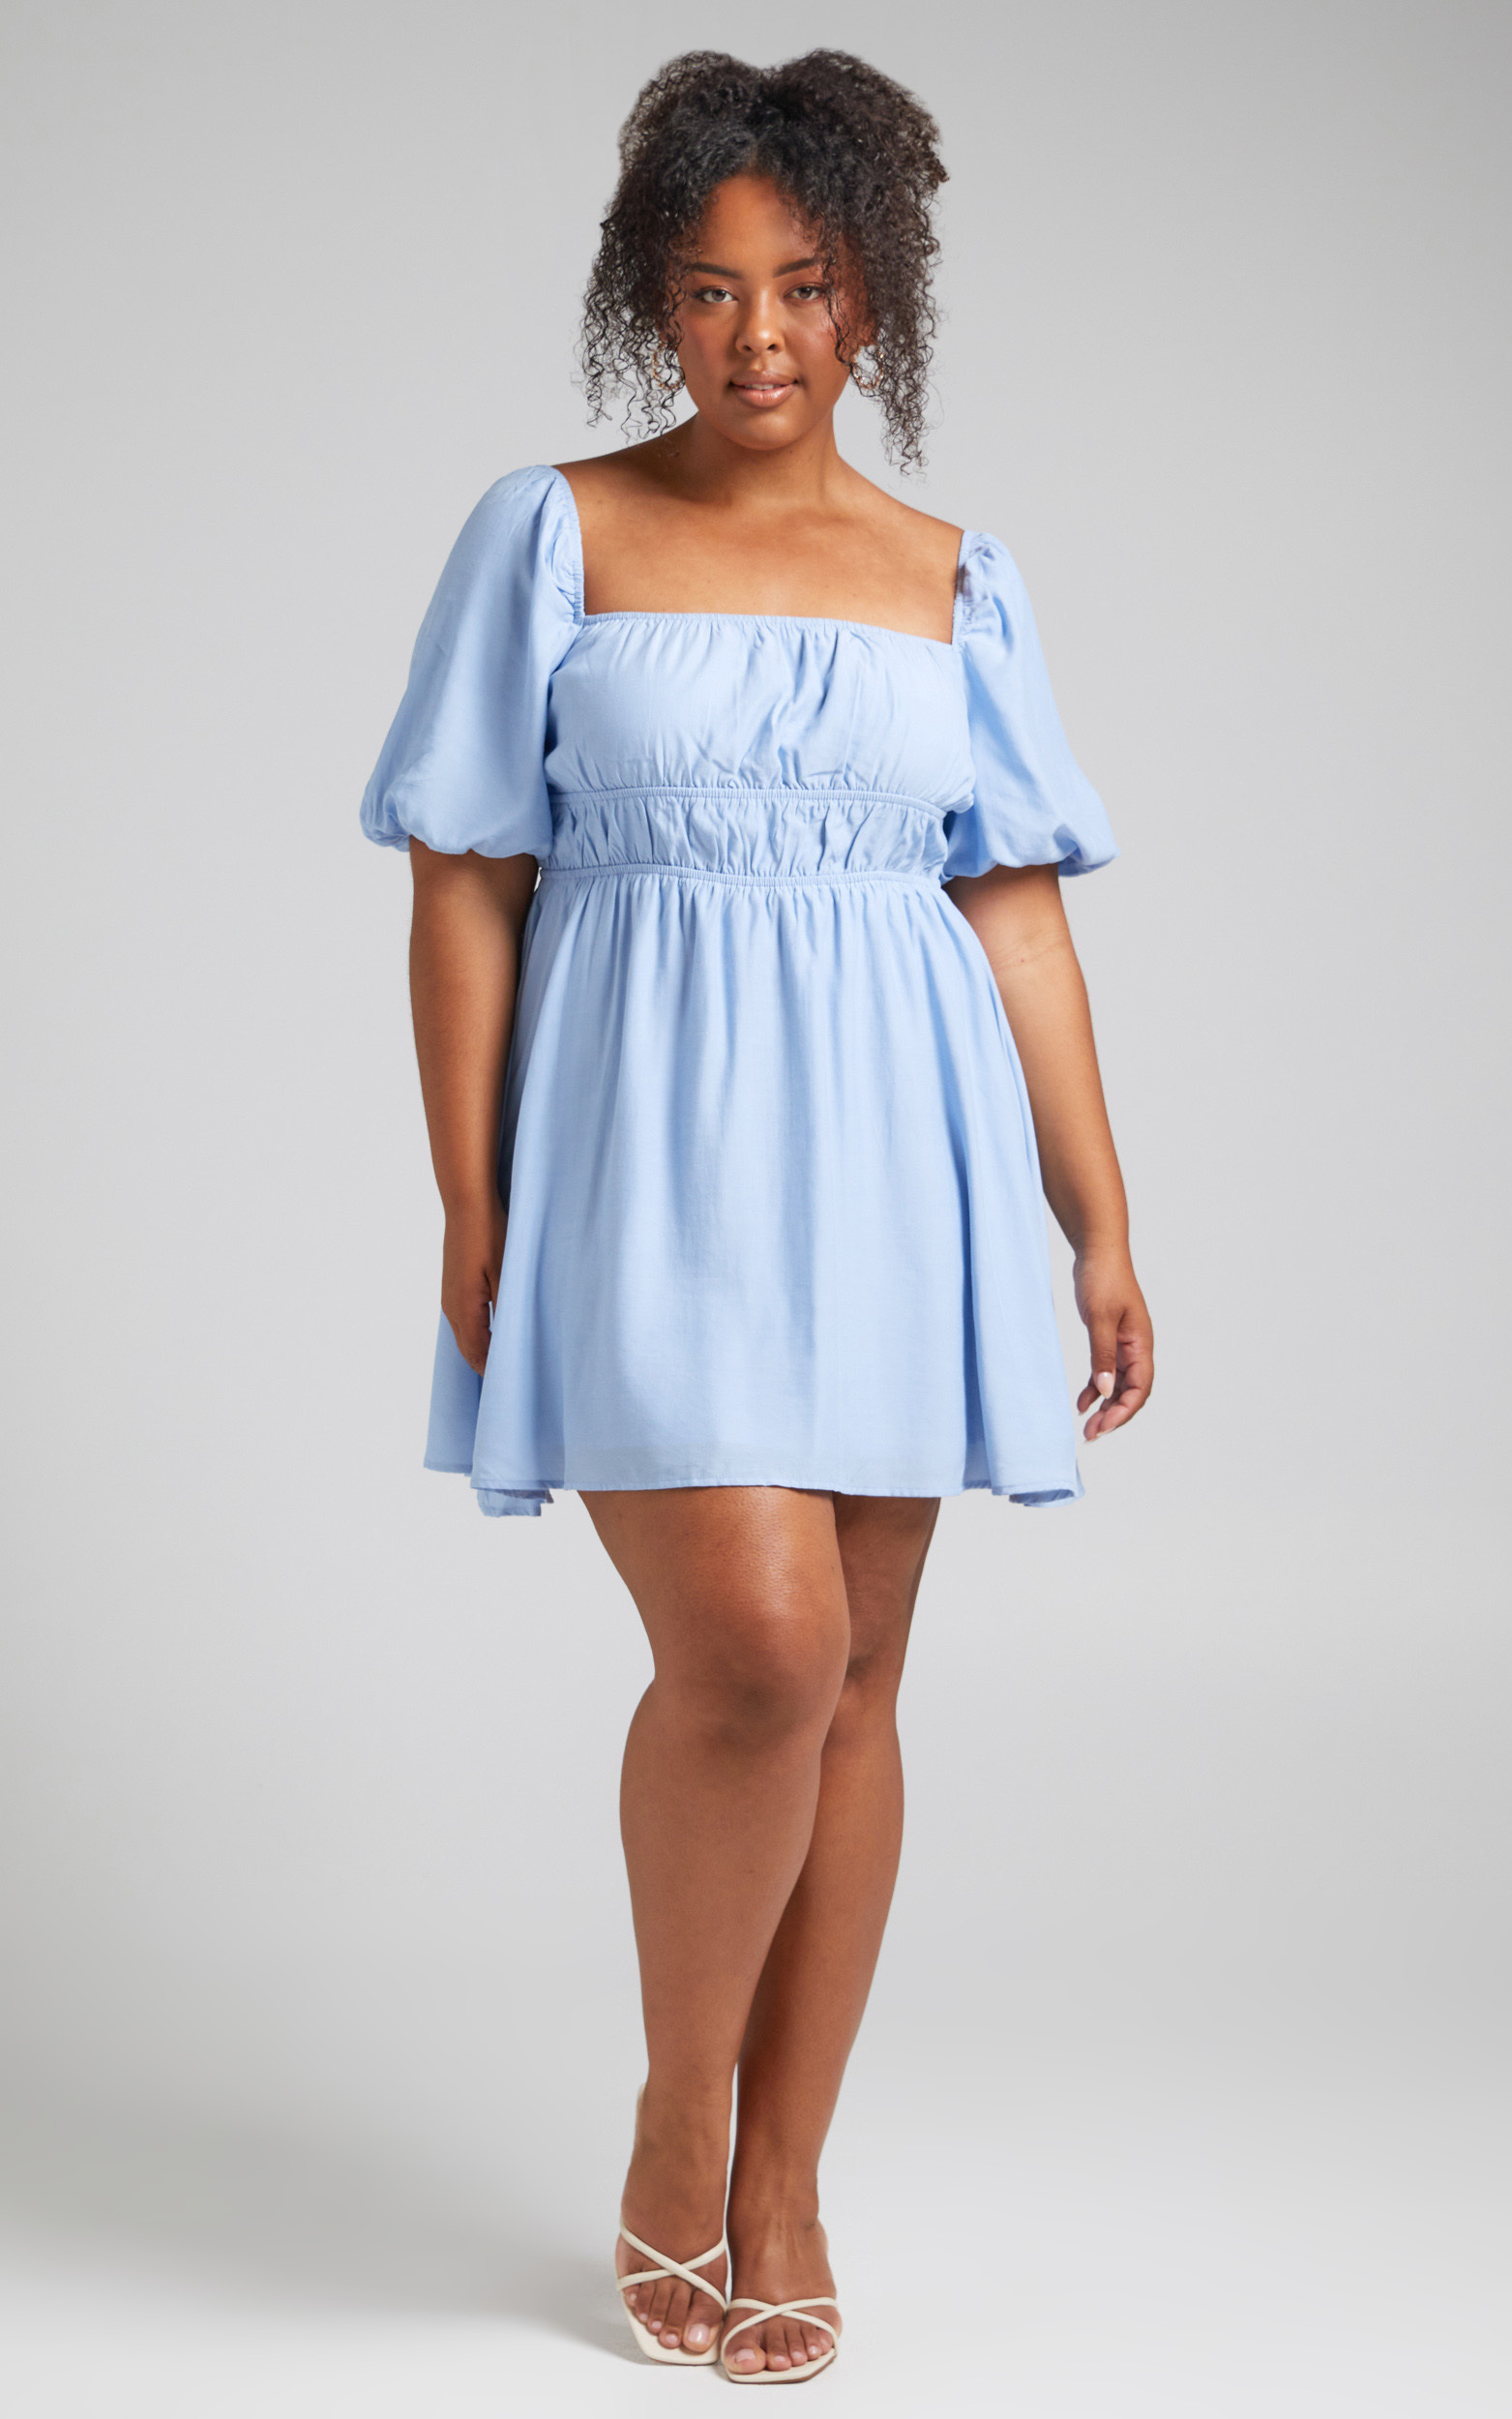 Maretta Stretch Waist Square Neck Mini Dress in Blue - 04, BLU1, hi-res image number null